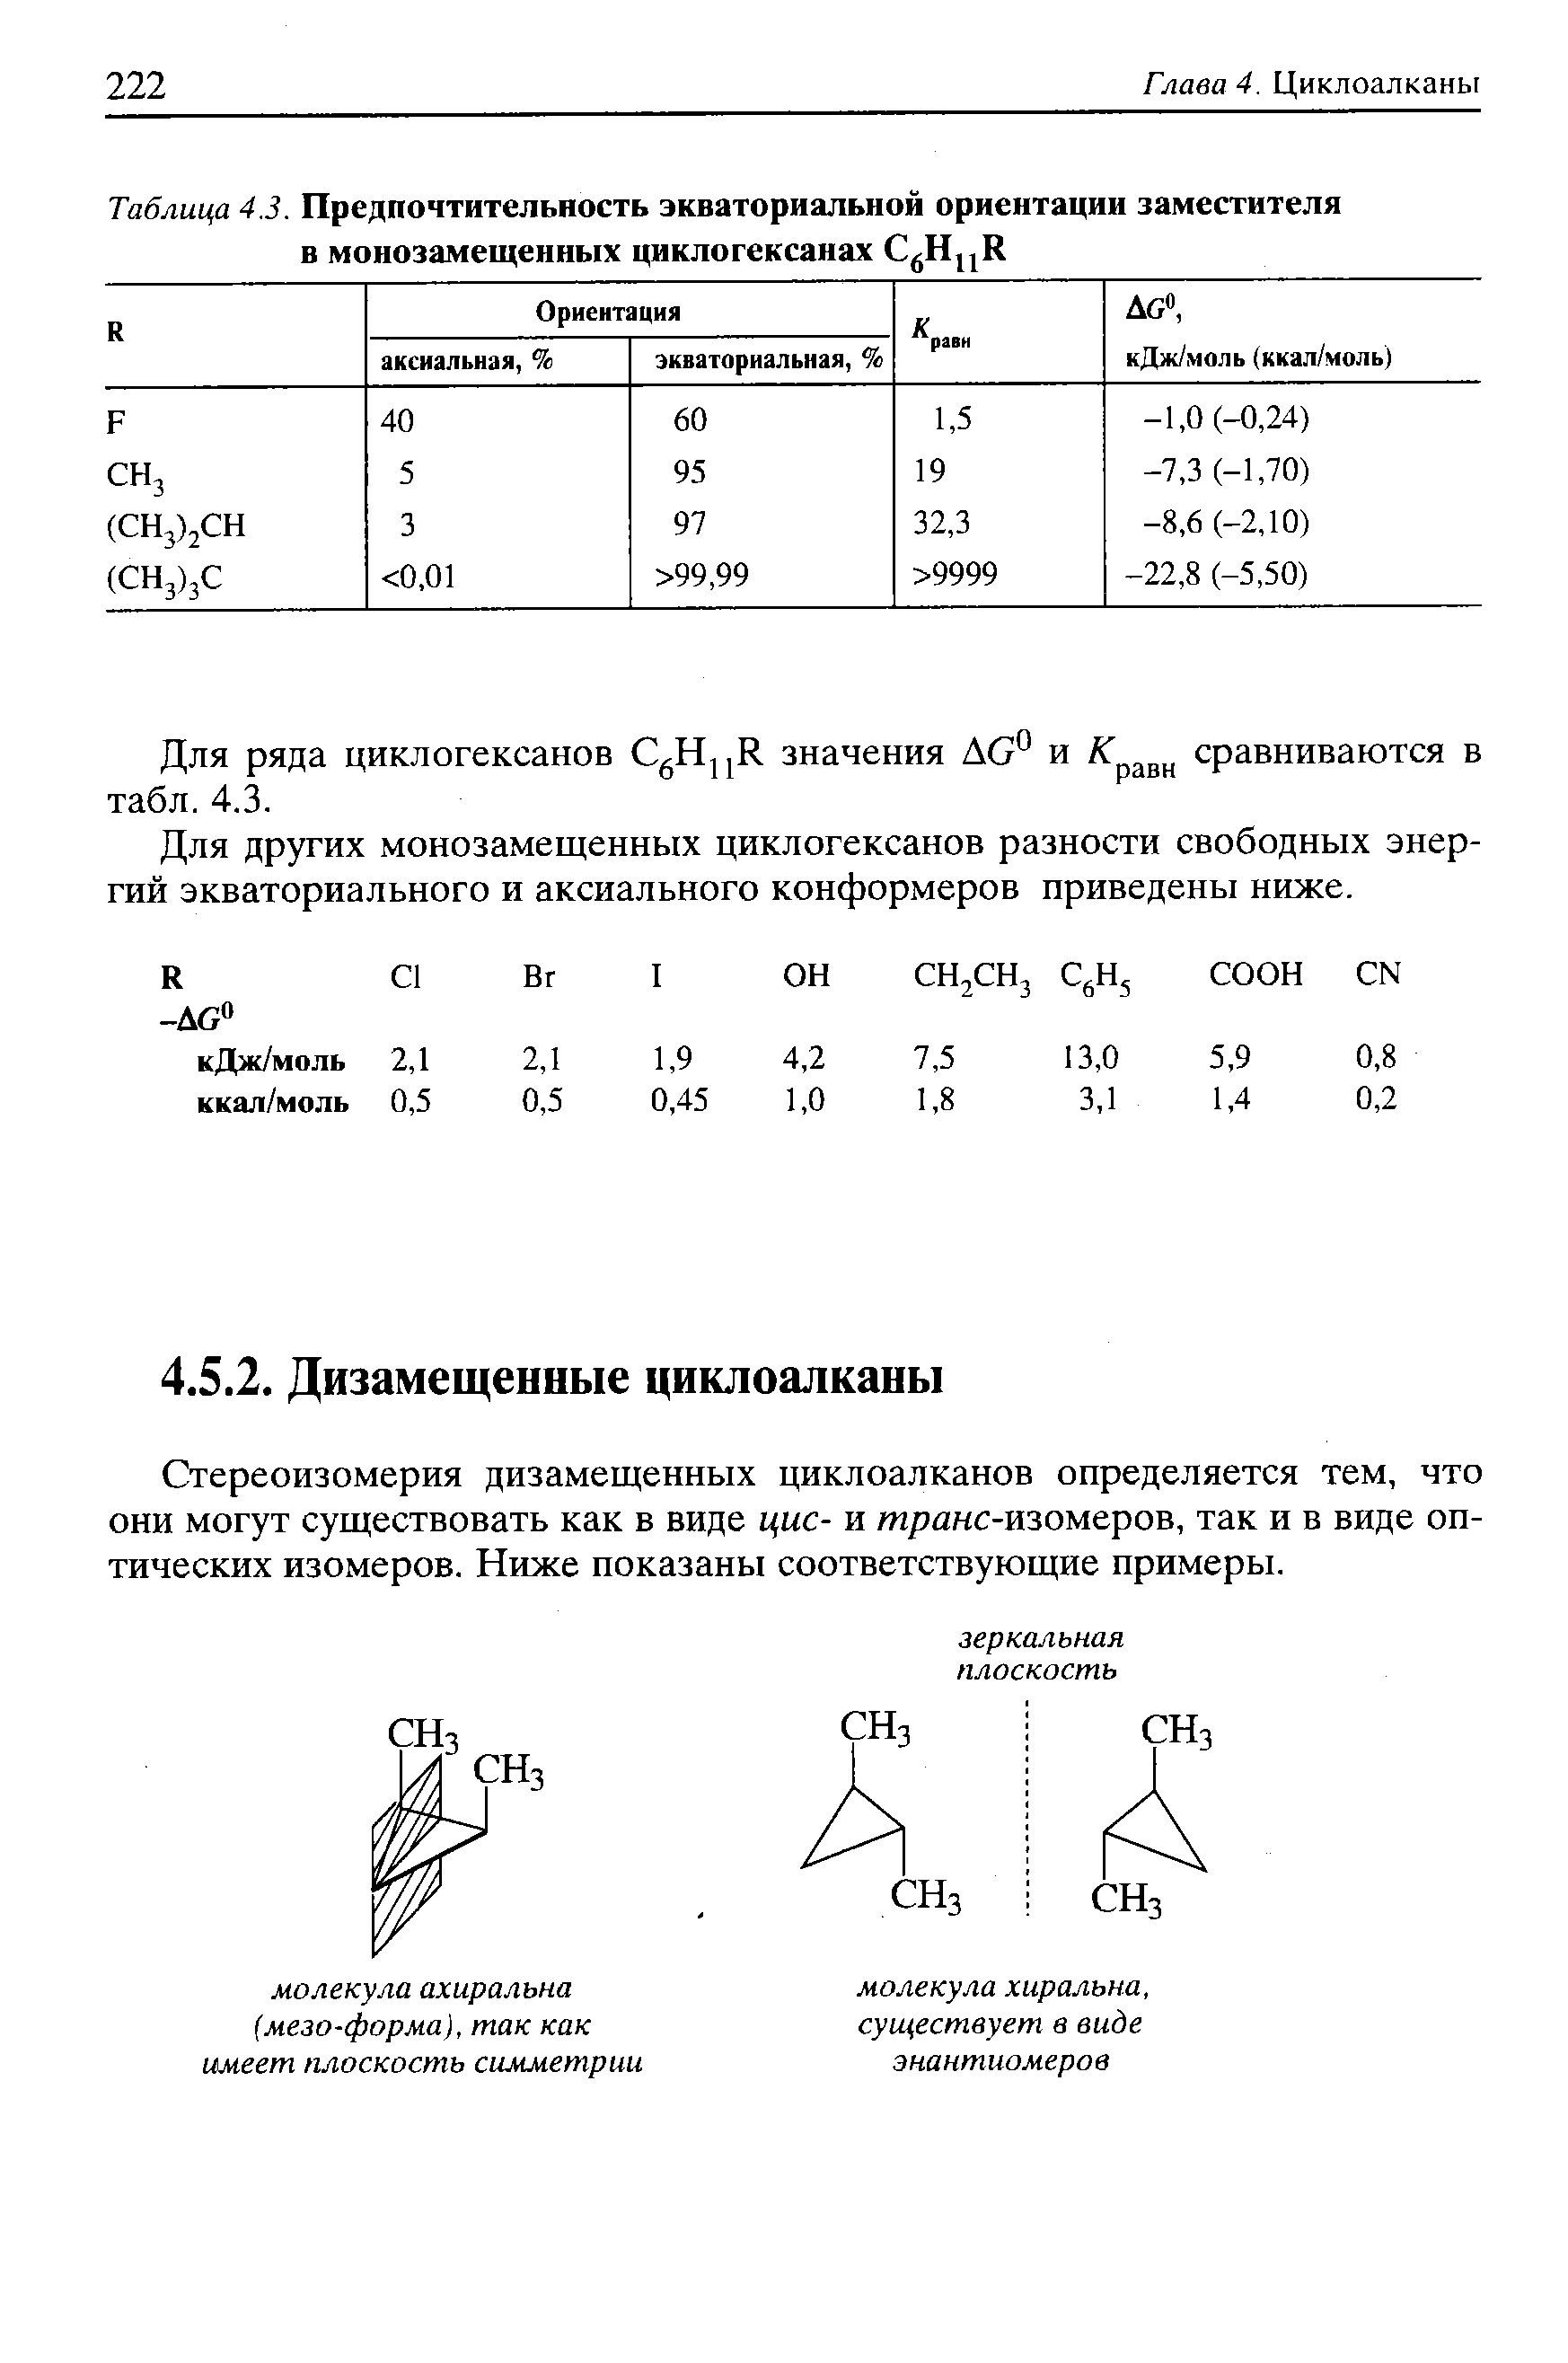 Стереоизомерия дизамещенных циклоалканов определяется тем, что они могут существовать как в виде цис- и транс-изомеров, так и в виде оптических изомеров. Ниже показаны соответствующие примеры.